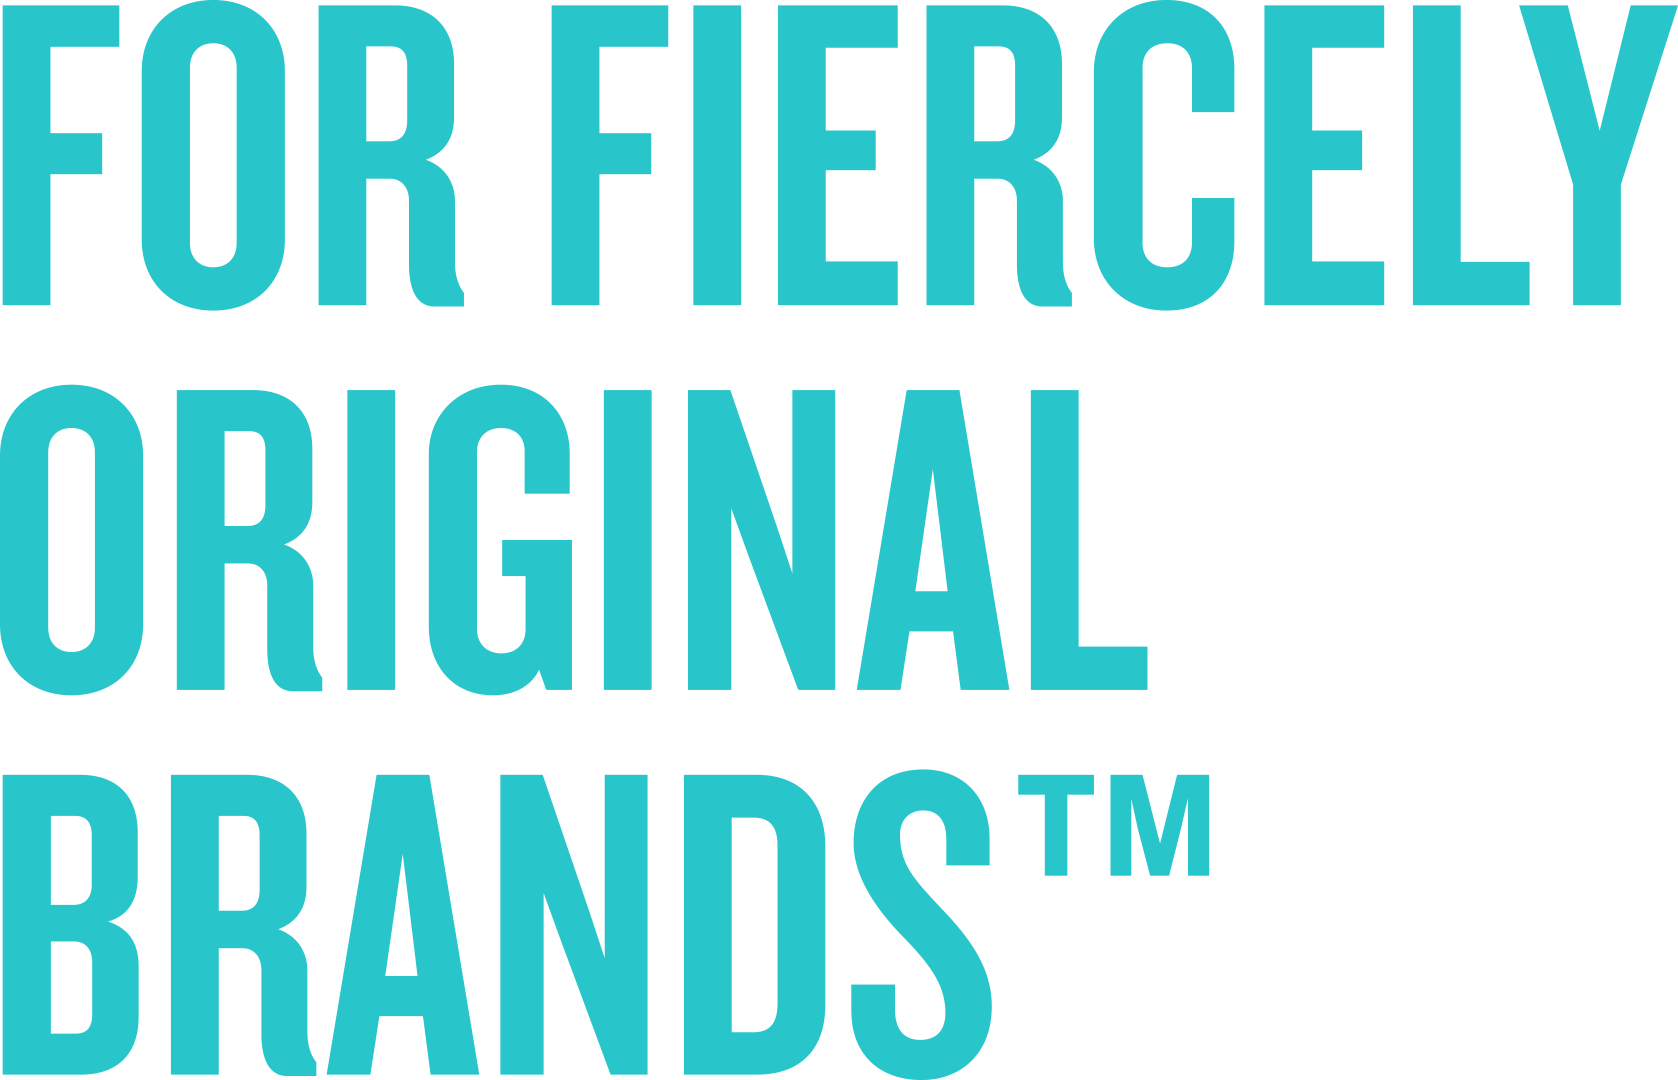 For fiercely original brands